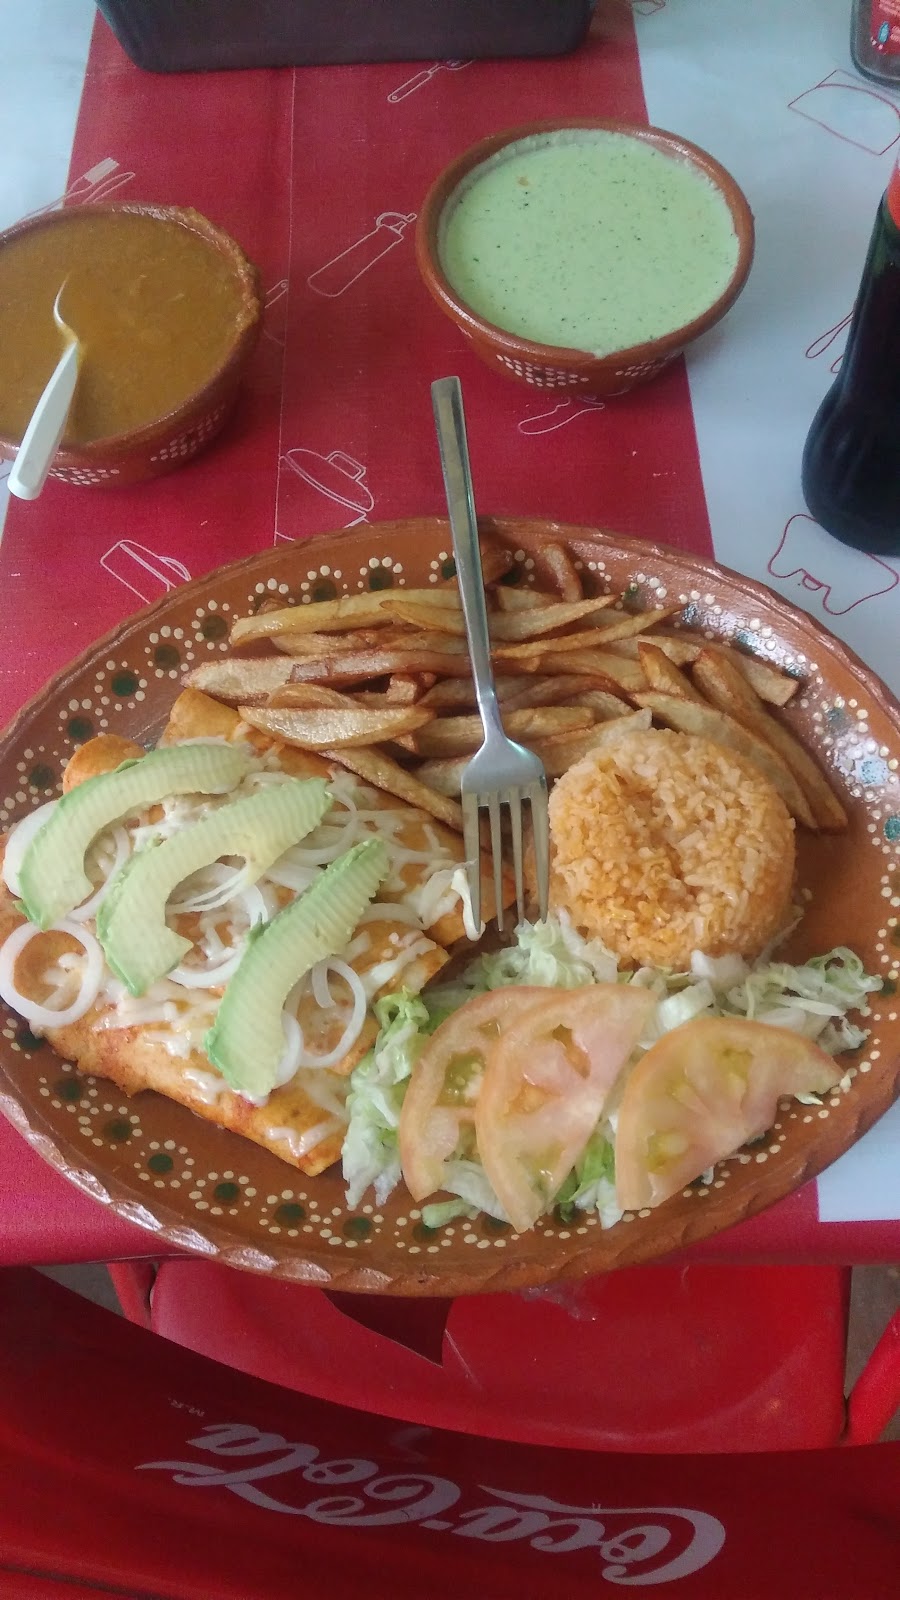 Burritos La Terminal | 32600, Las almeras, 32600 Cd Juárez, Chih., Mexico | Phone: 656 121 5669